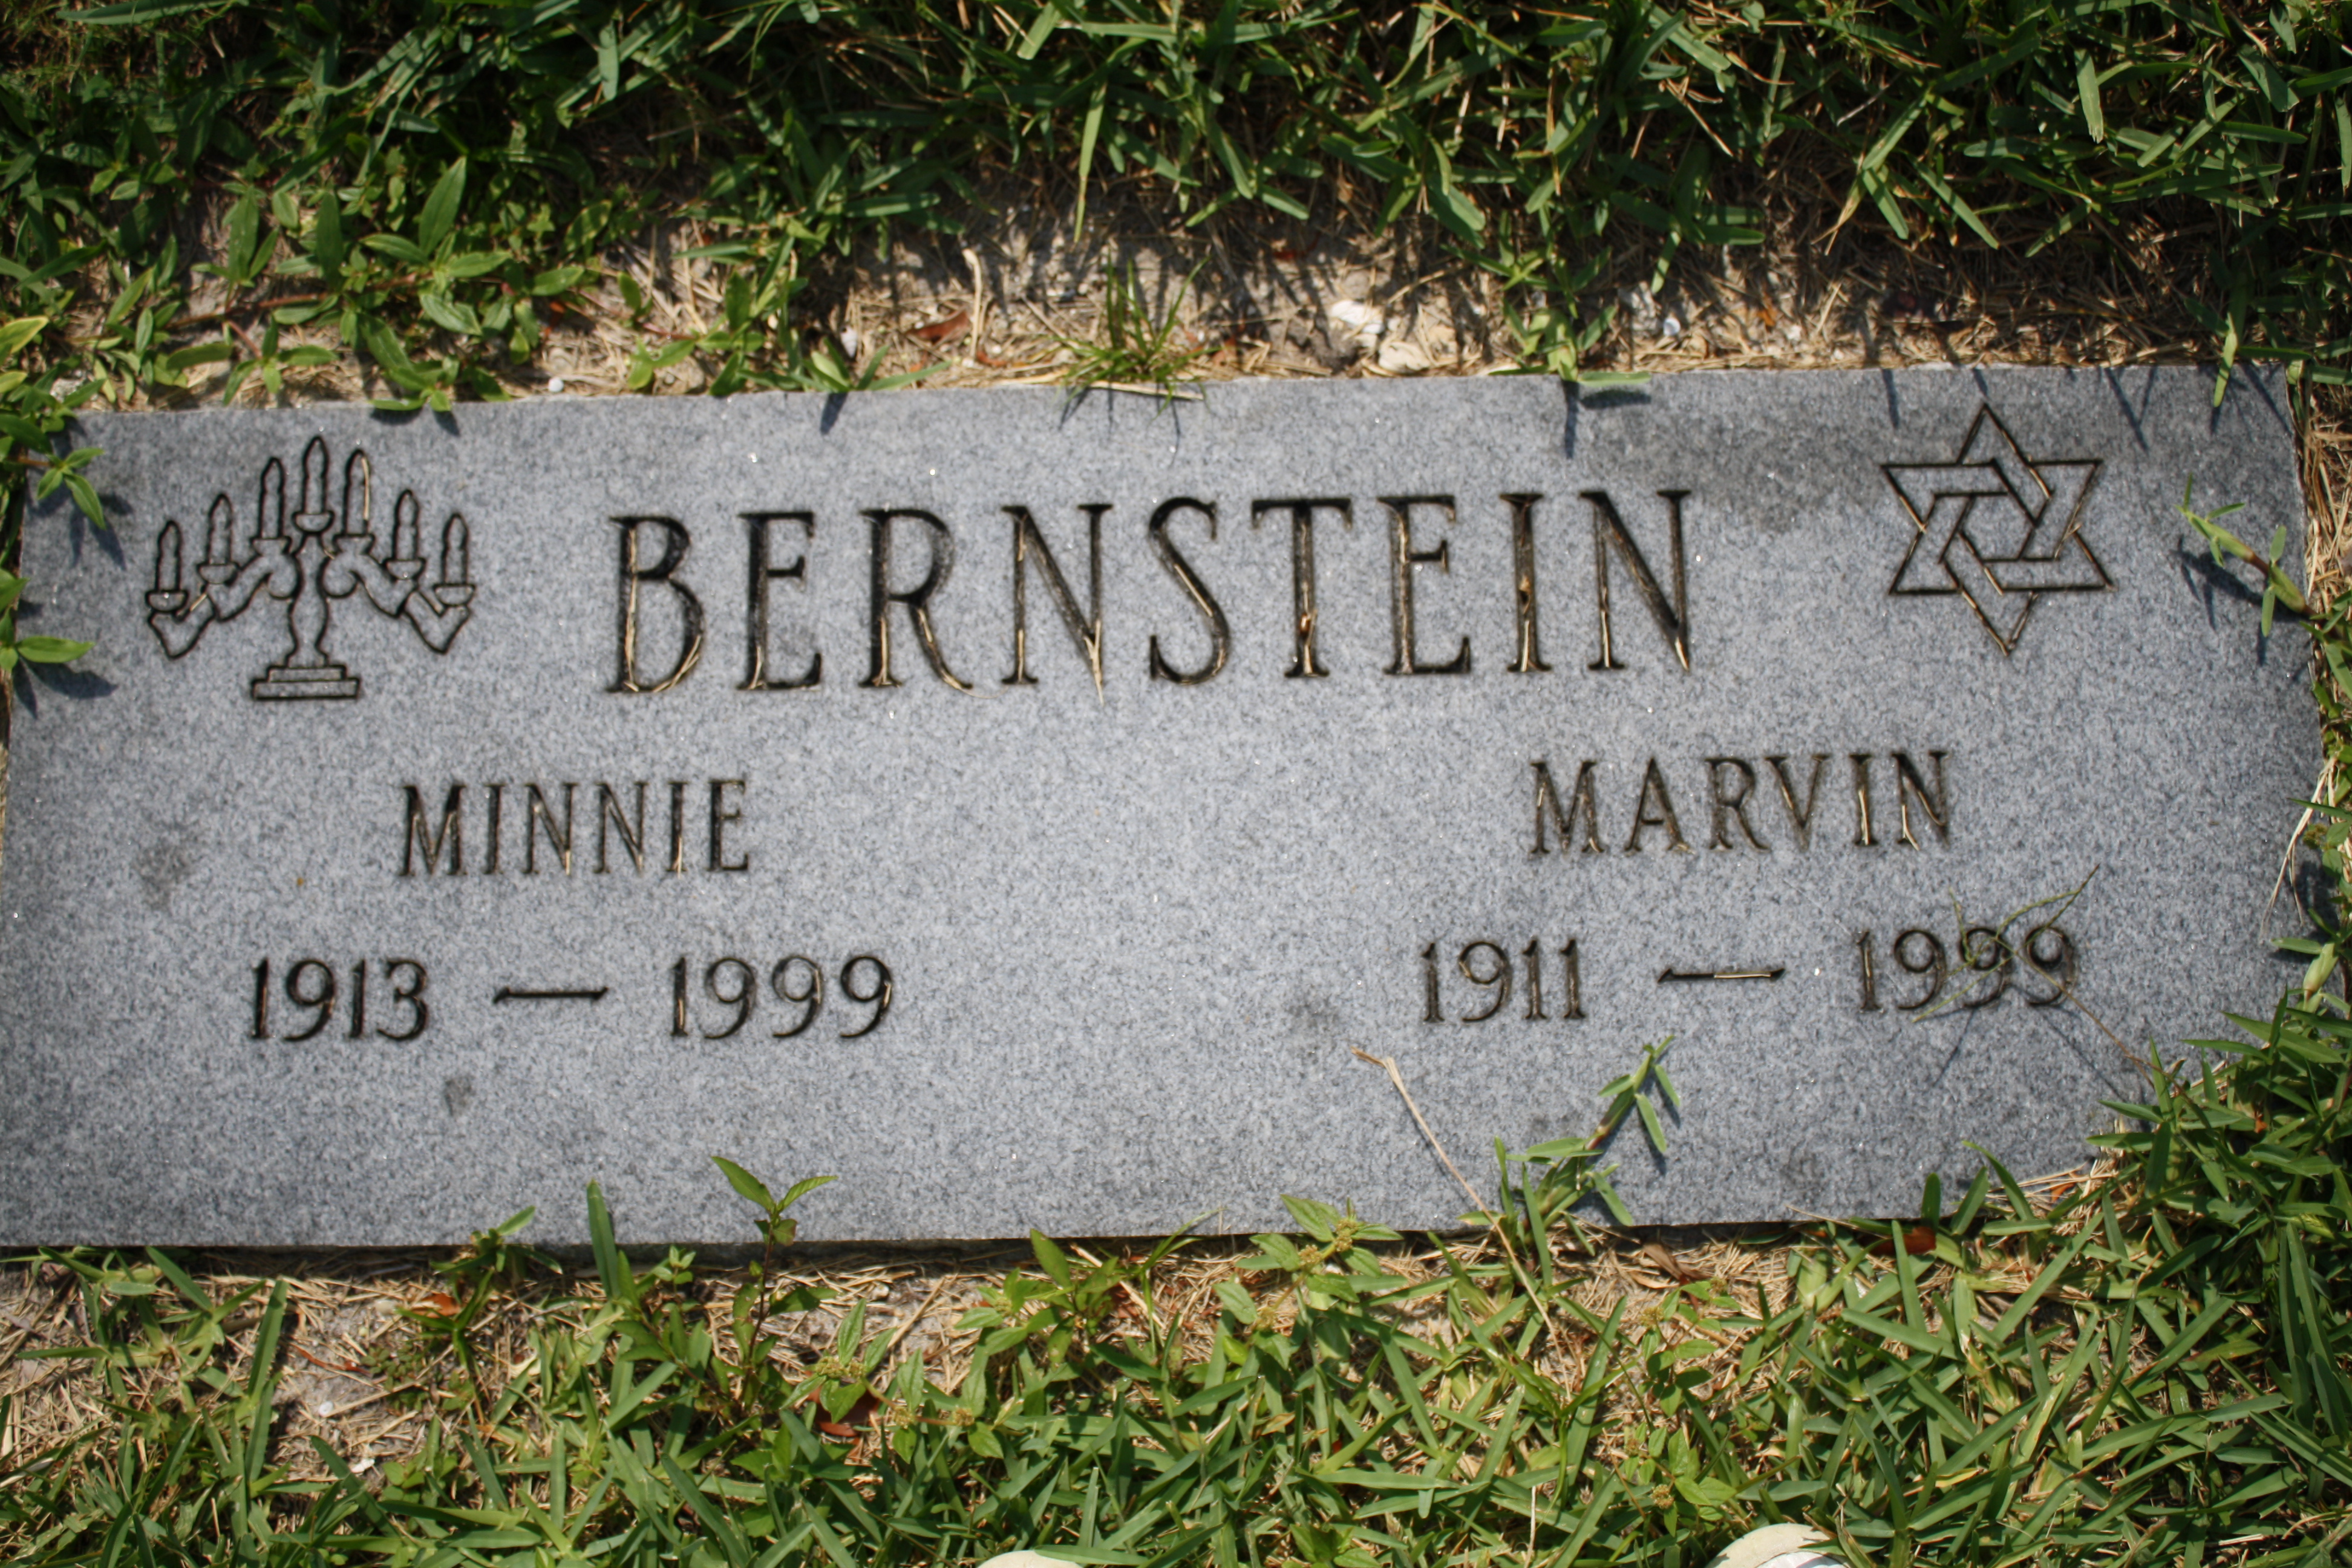 Marvin Bernstein